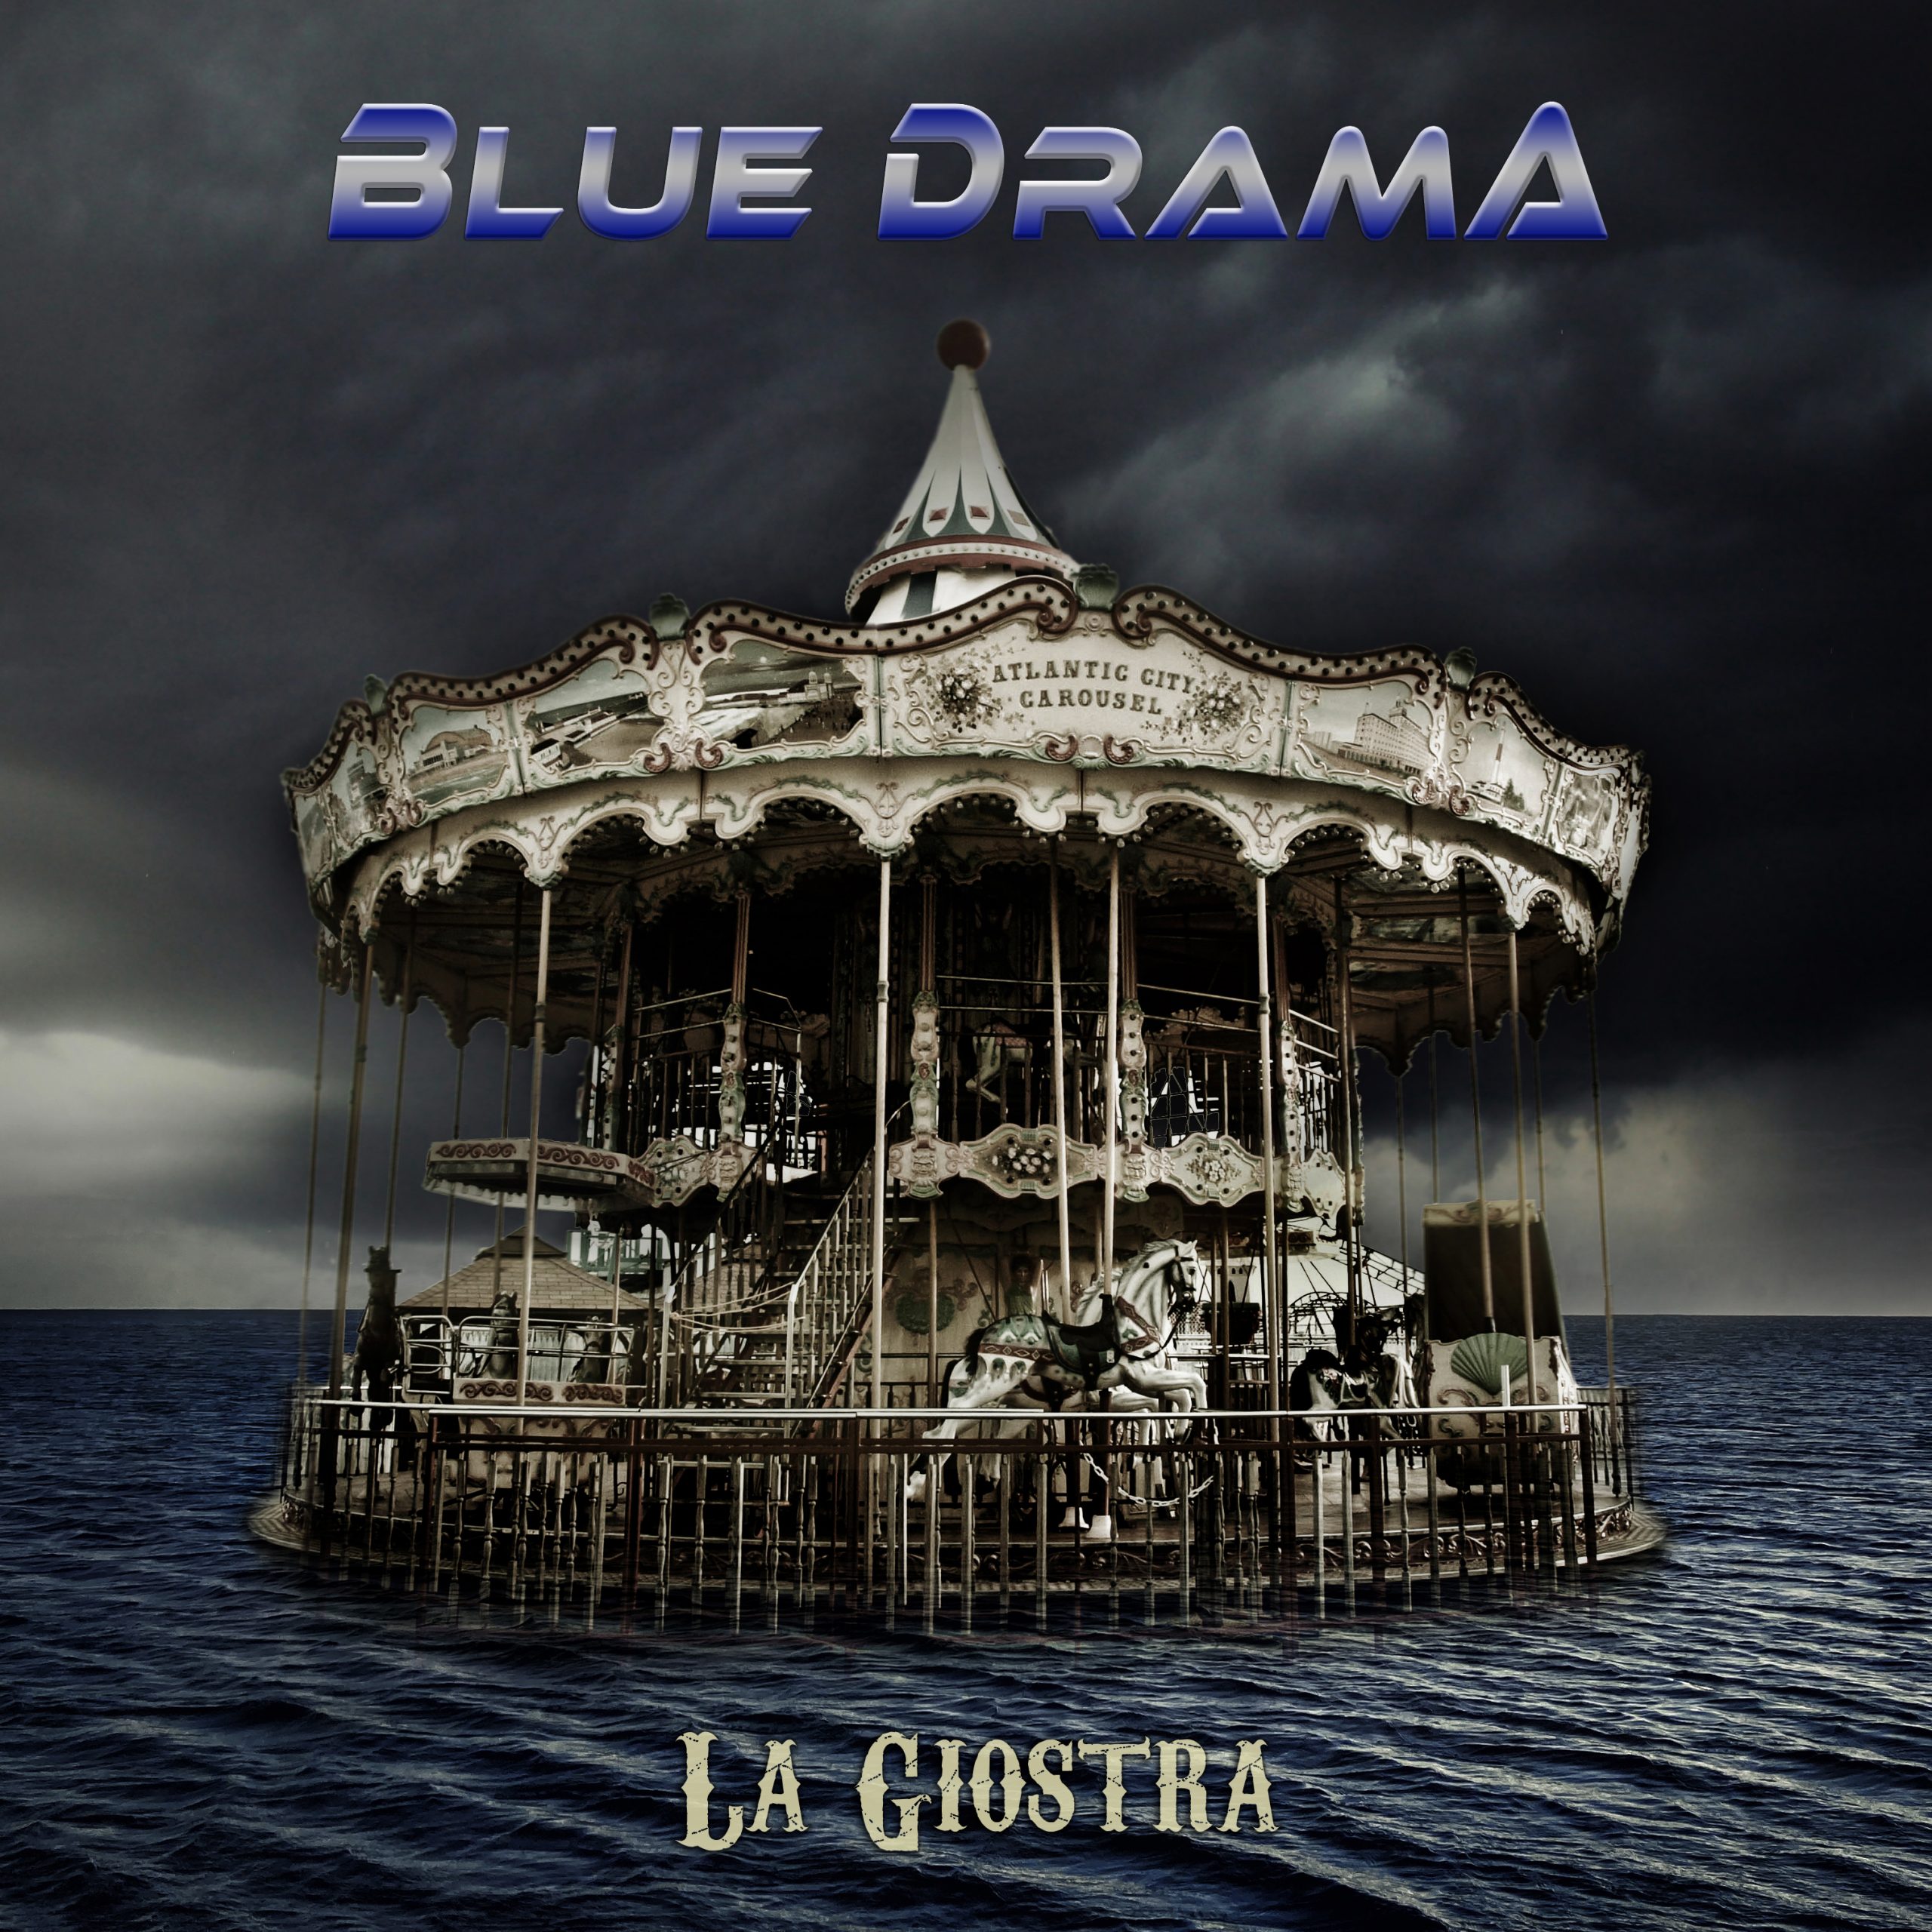 Blue Drama – “La Giostra”